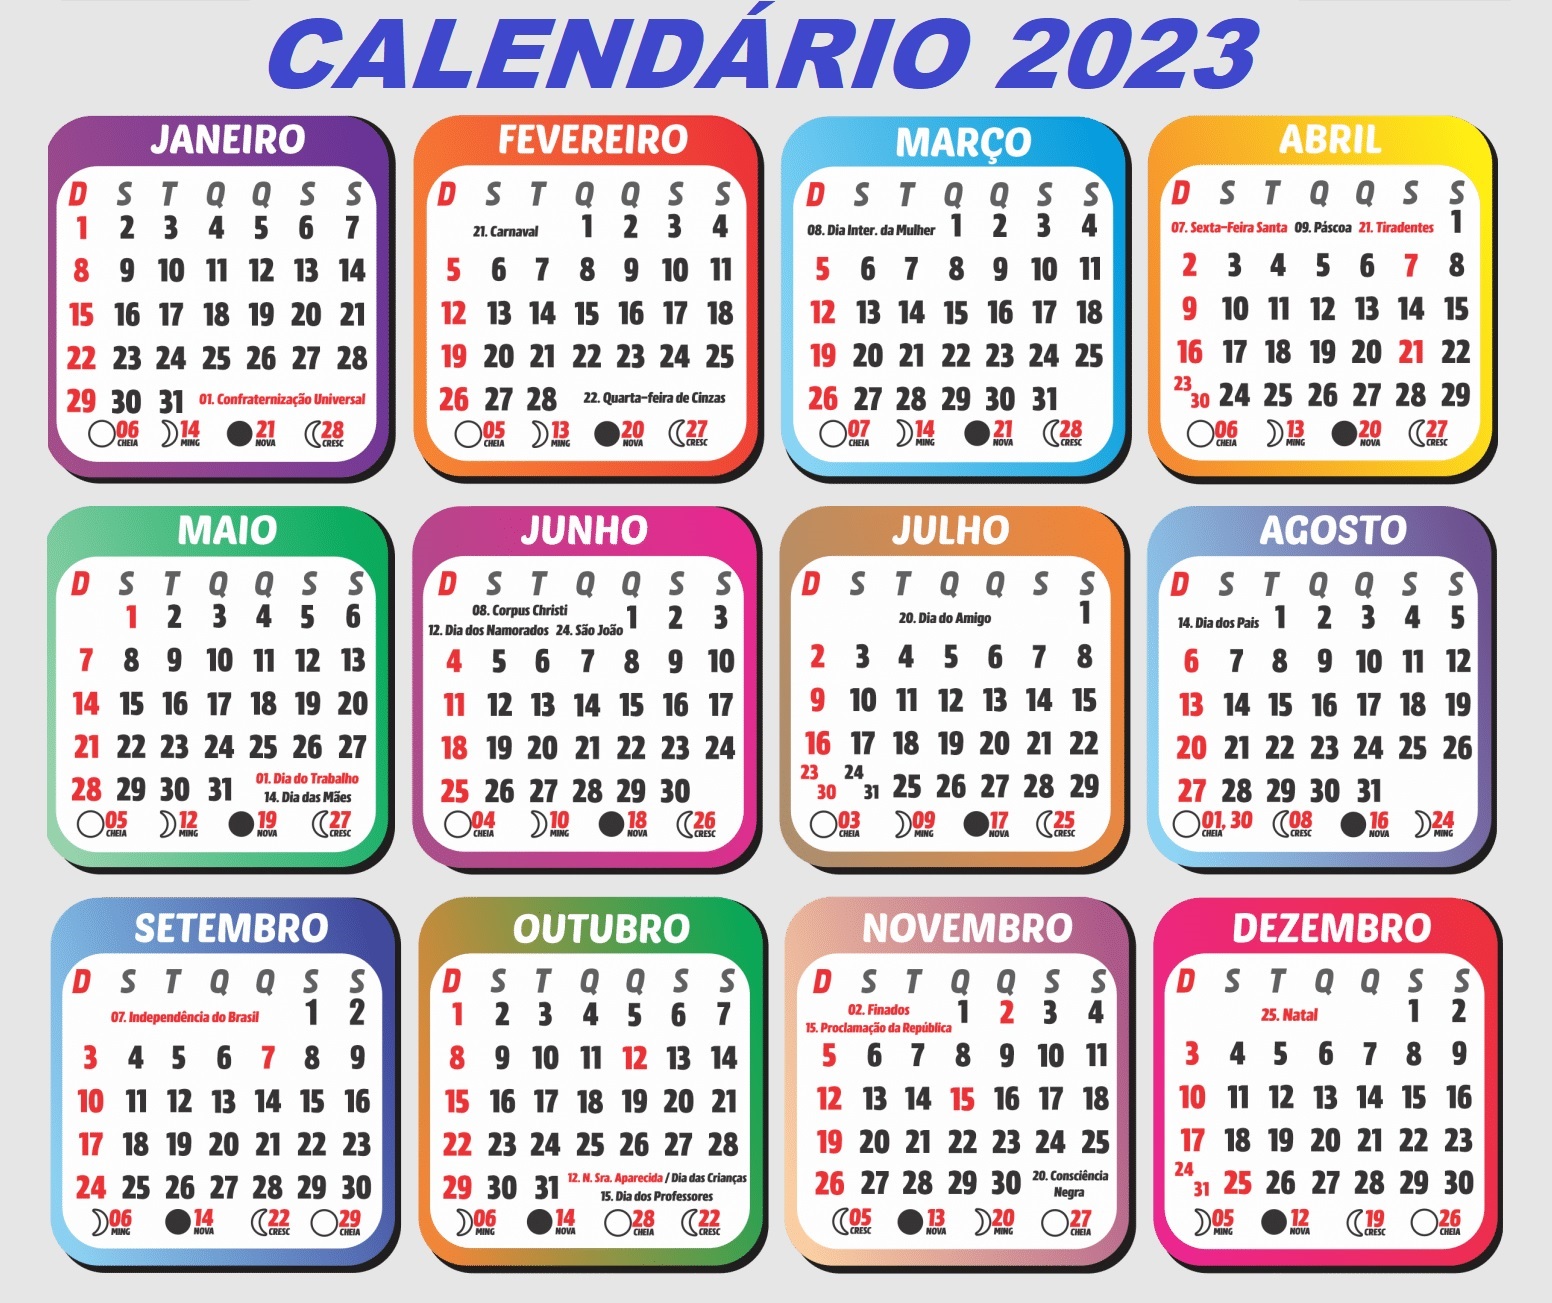 CALENDÁRIO 2023 COM FERIADOS E LUAS DO ANO DE 2023 VÍDEO